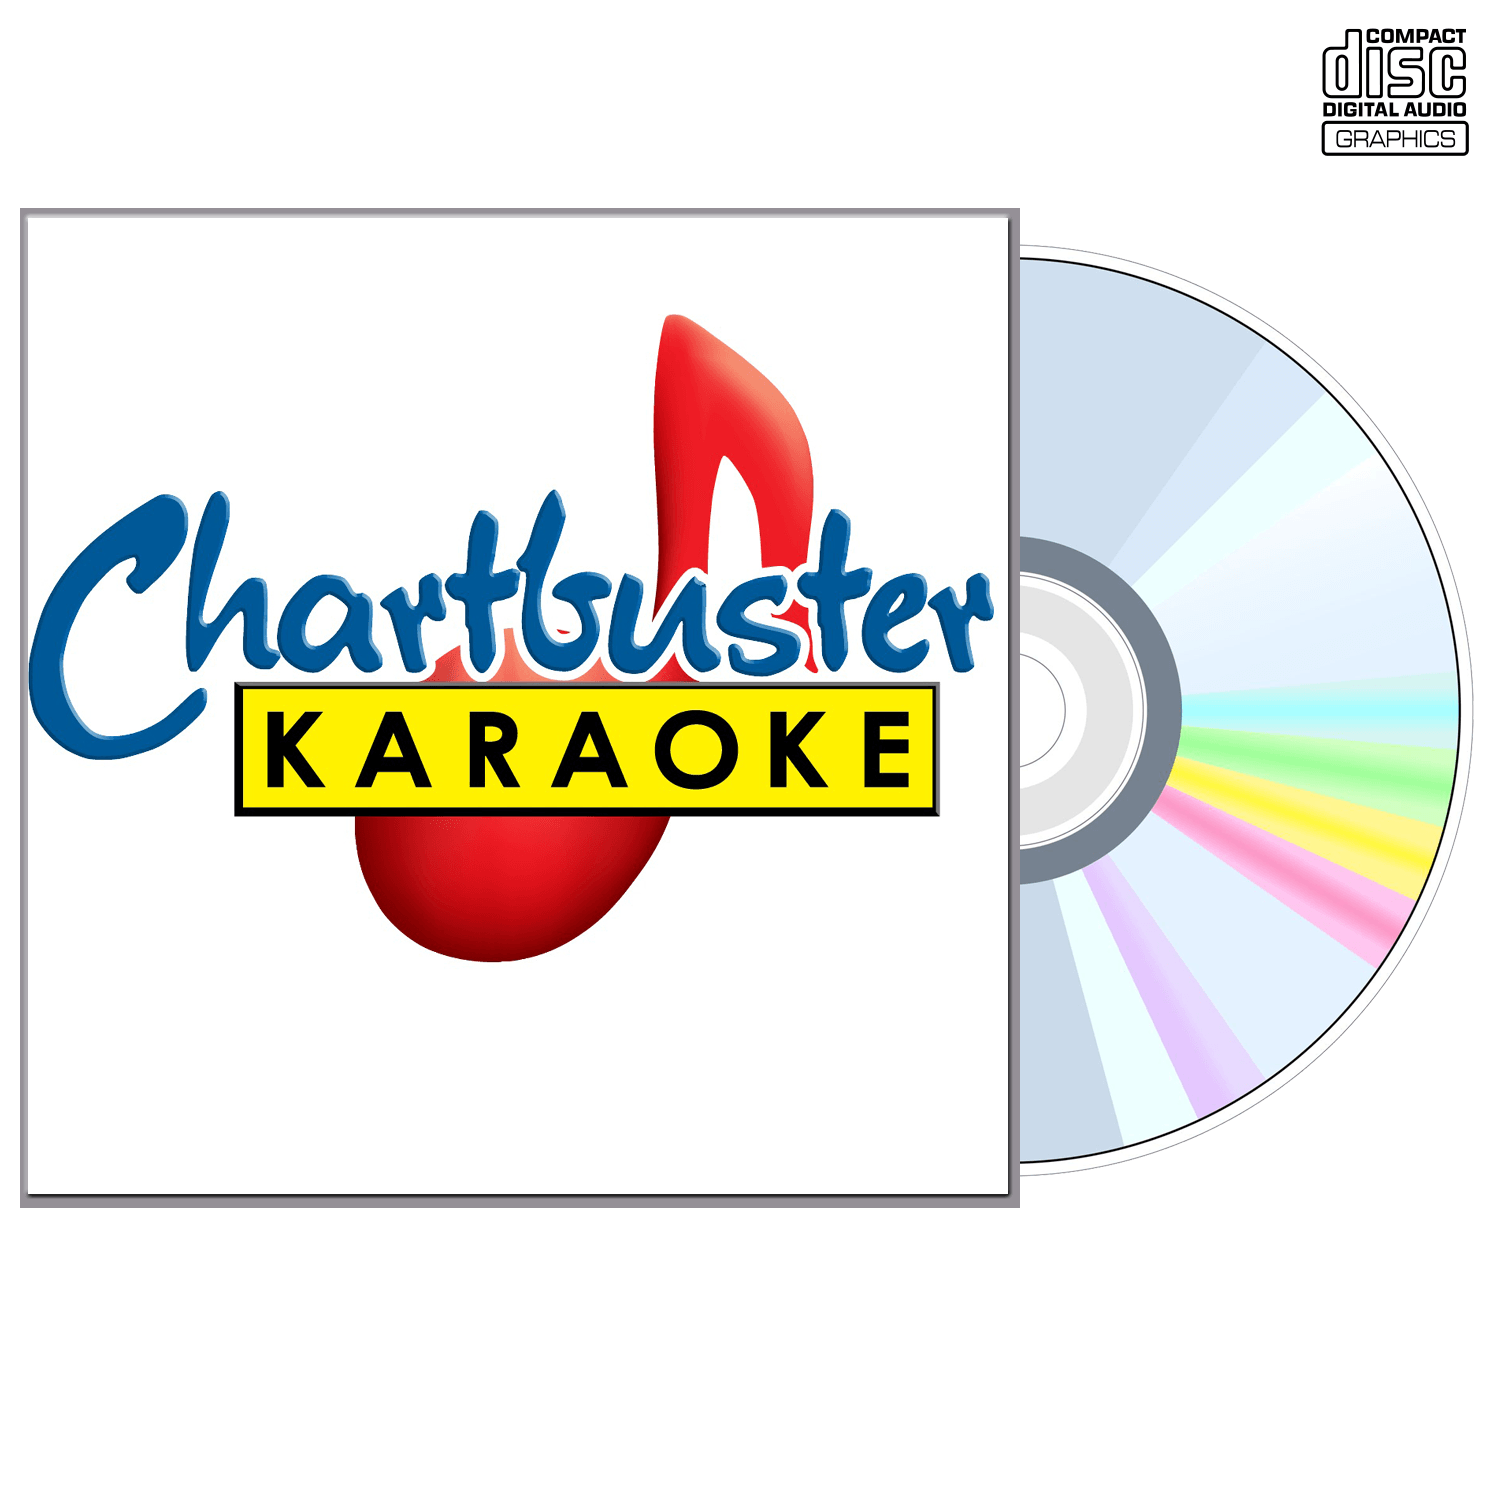 Jo Dee Messina Vol 2 - CD+G - Chartbuster Karaoke - Karaoke Home Entertainment